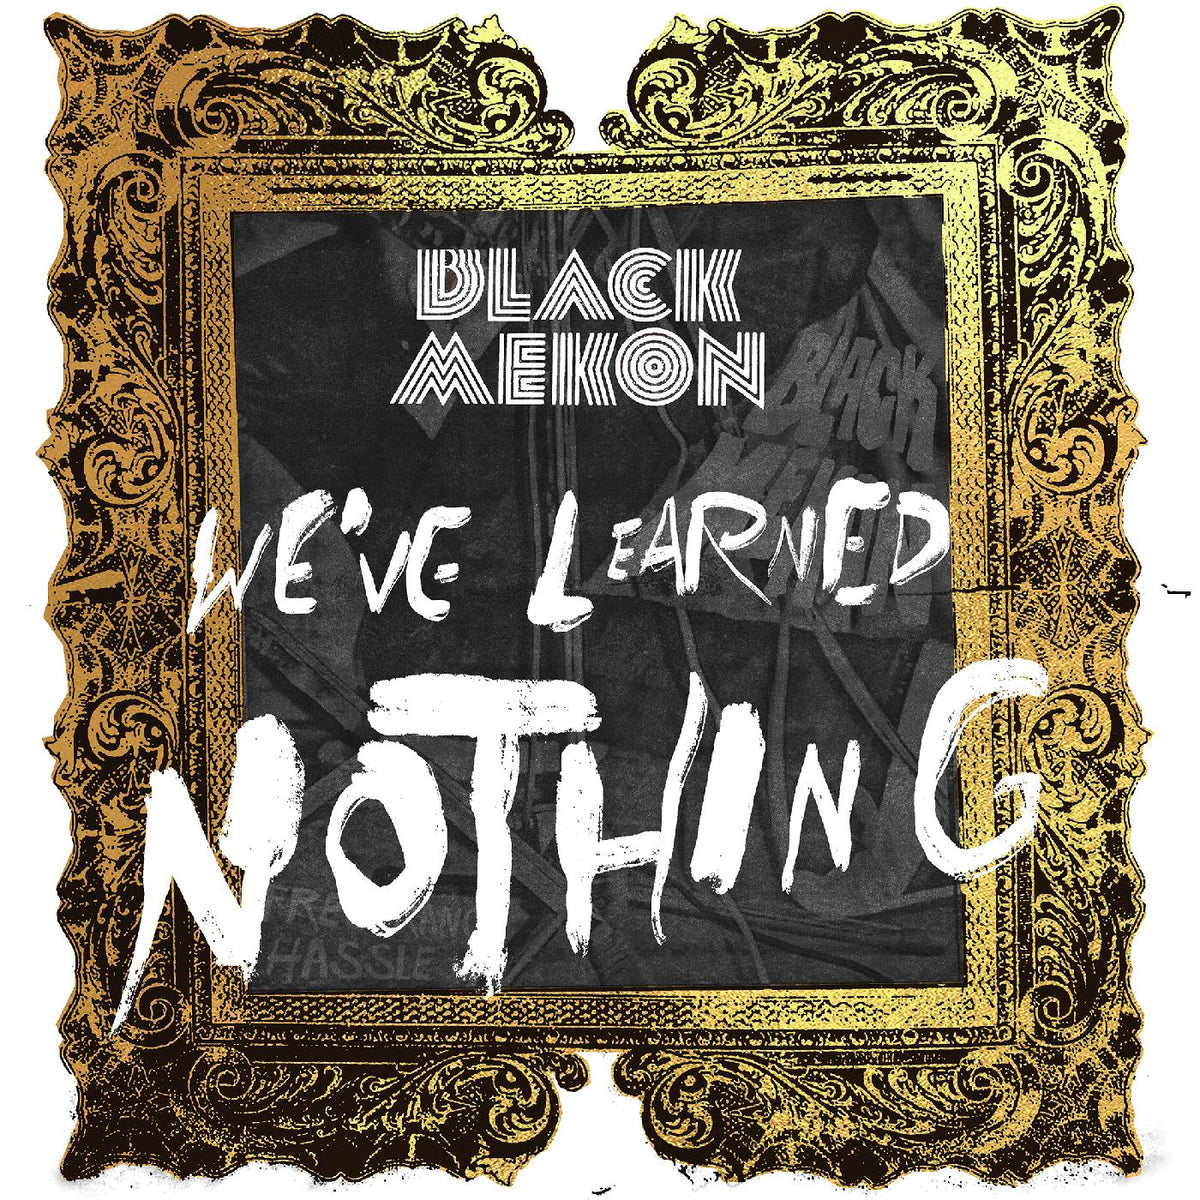 Black Mekon: We've Learned Nothing